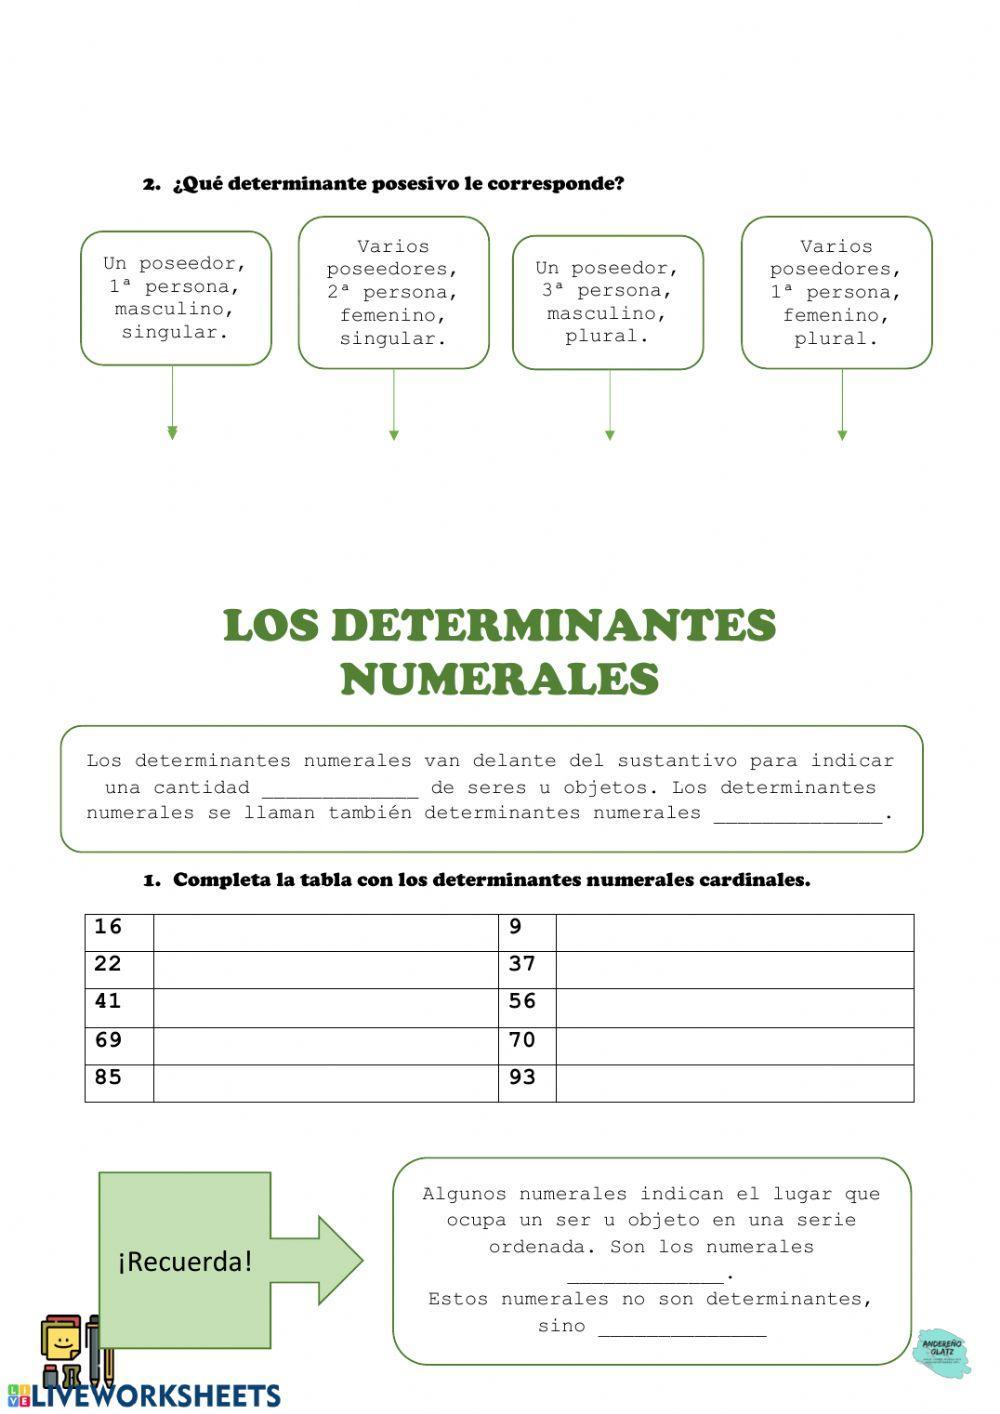 Los determinantes posesivos, numerales e indefinidos